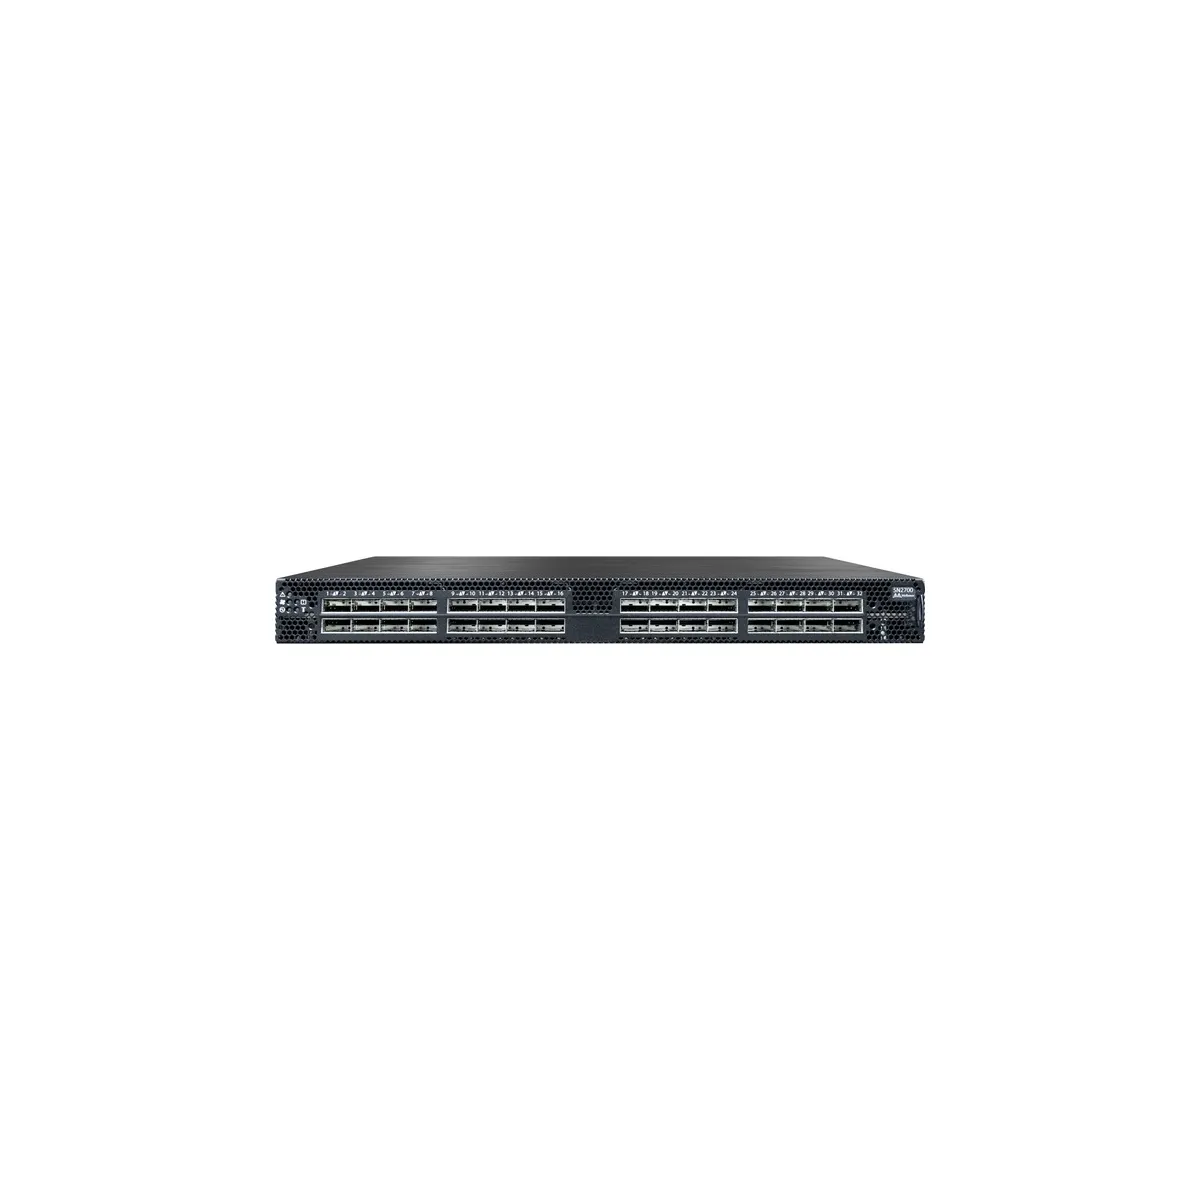 Mellanox SN2700 ONIE 32-Port QSFP28 100GbE Managed Switch 460W w/Rails